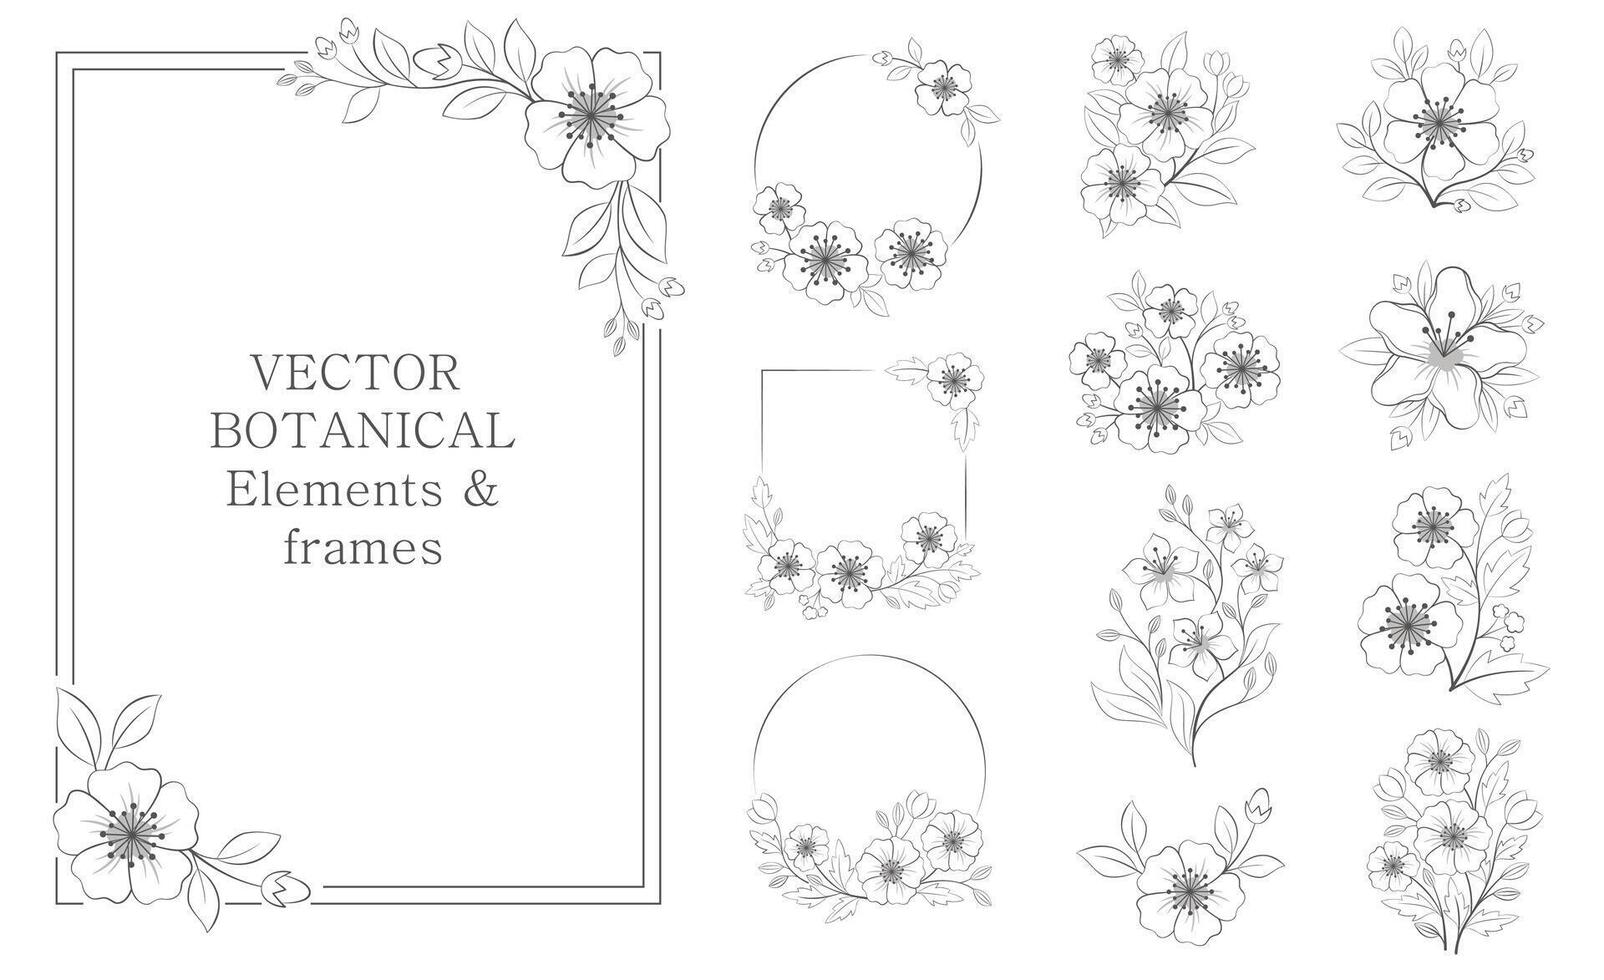 Vektor einstellen von botanisch Elemente und Frames im runden, Quadrat. schwarz Abbildungen zum Banner